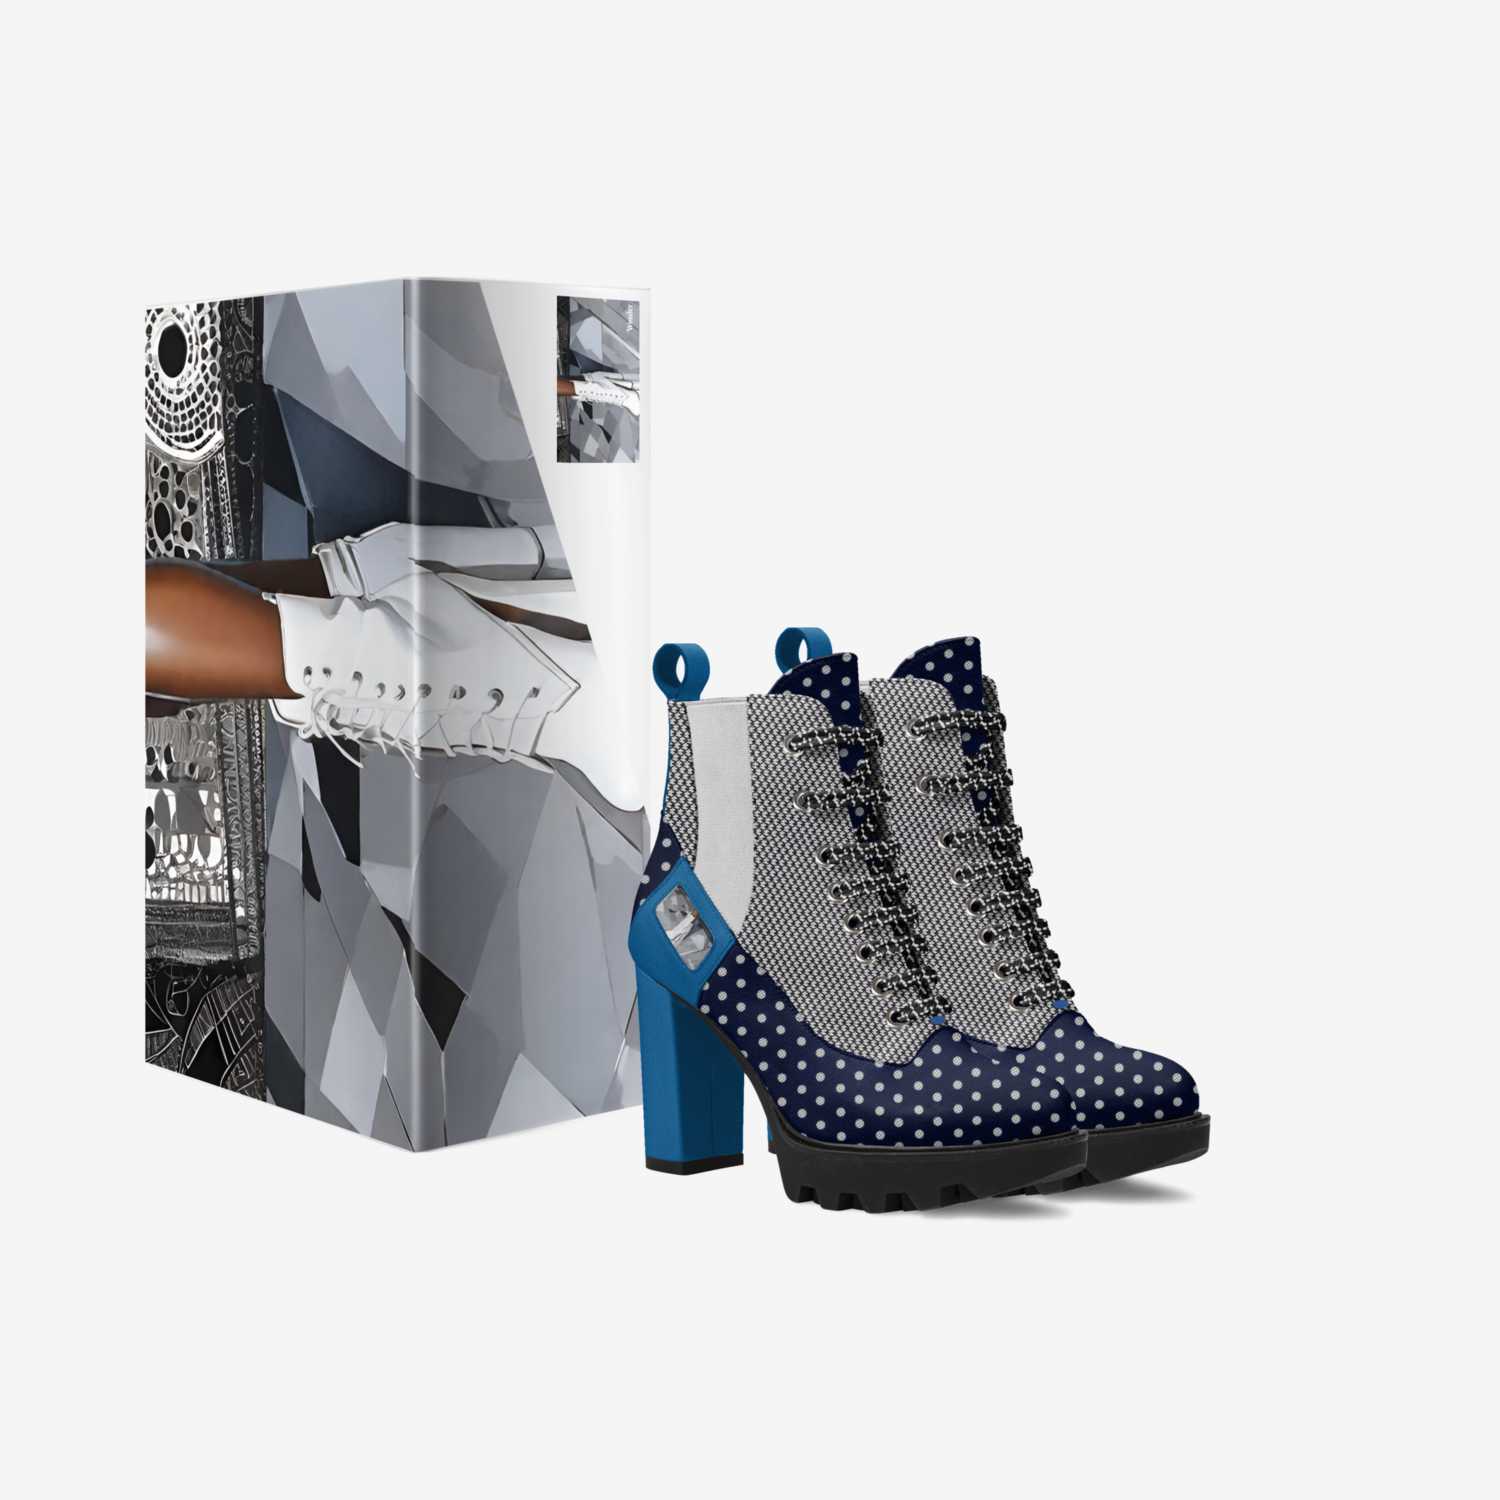 PolkaDotFushion custom made in Italy shoes by Desiree Sims | Box view